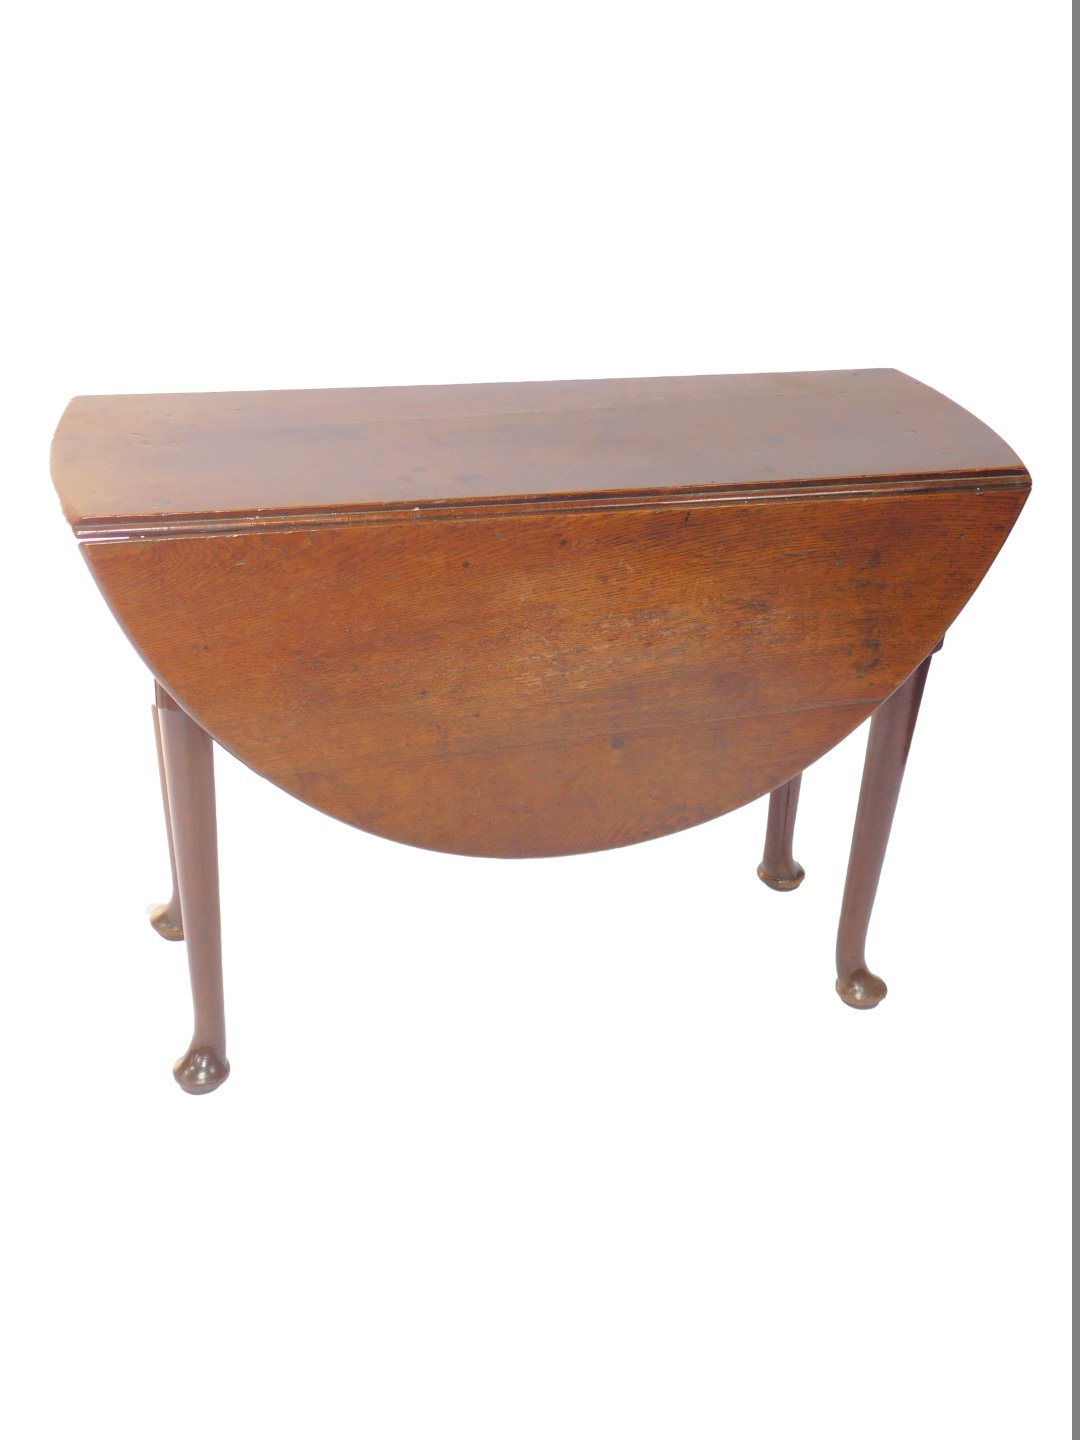 A George III oak drop leaf dining table, raised on turned legs and pad feet, 73cm H, 105cm W, 36cm